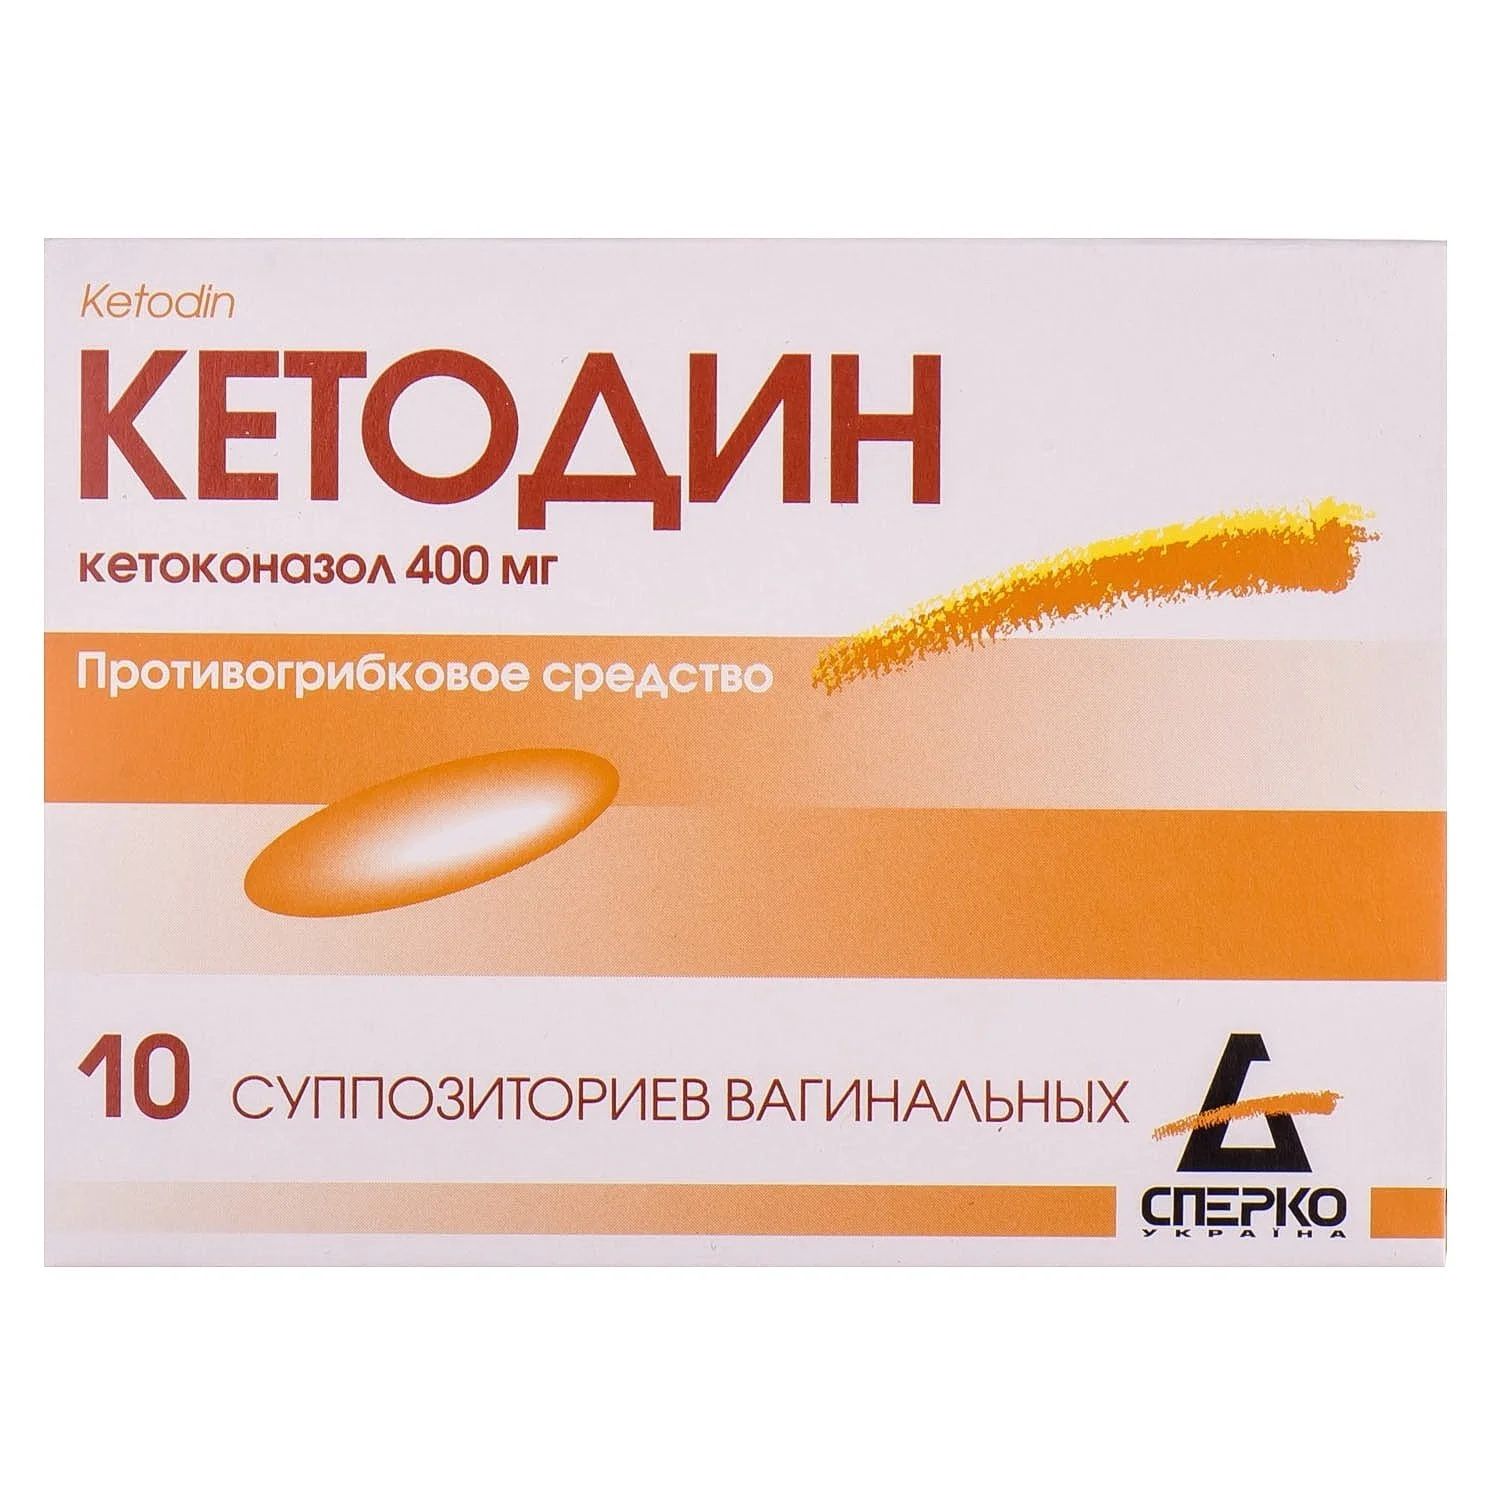 Нистатин инструкция - купить Нистатин от молочницы, цена на препарат в Украине - МИС Аптека 